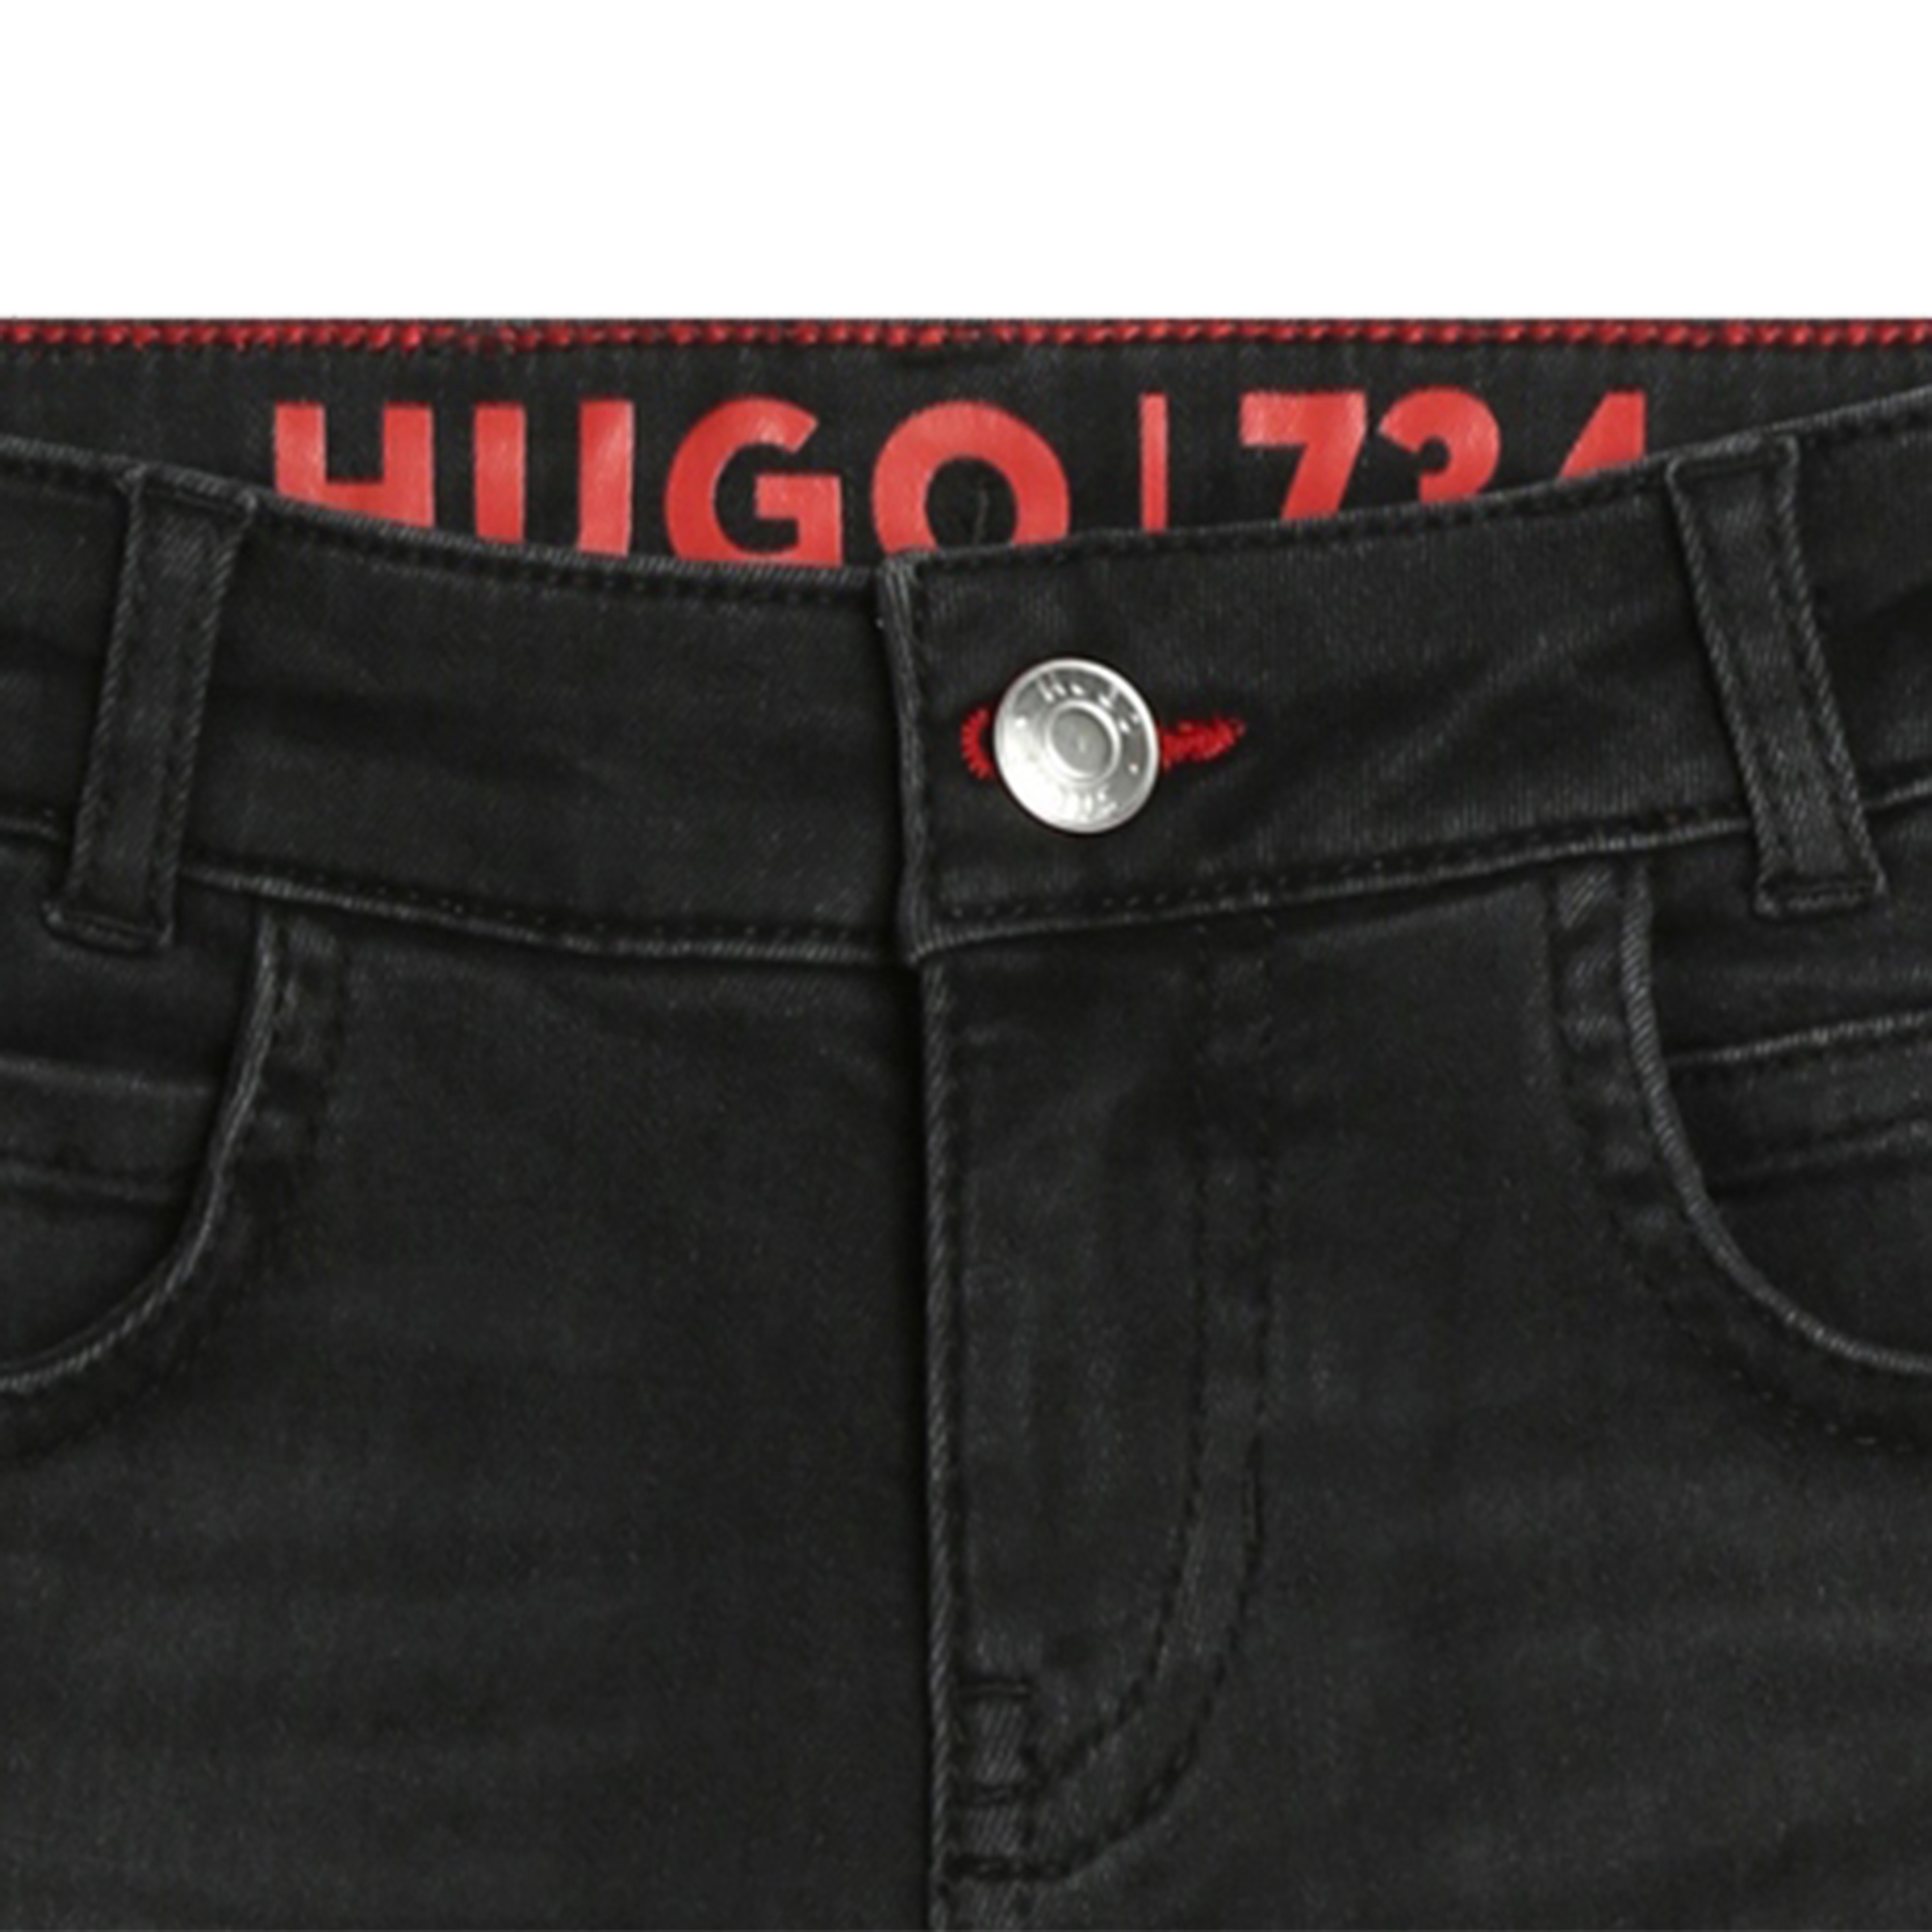 Jeans elasticizzati 5 tasche HUGO Per RAGAZZO